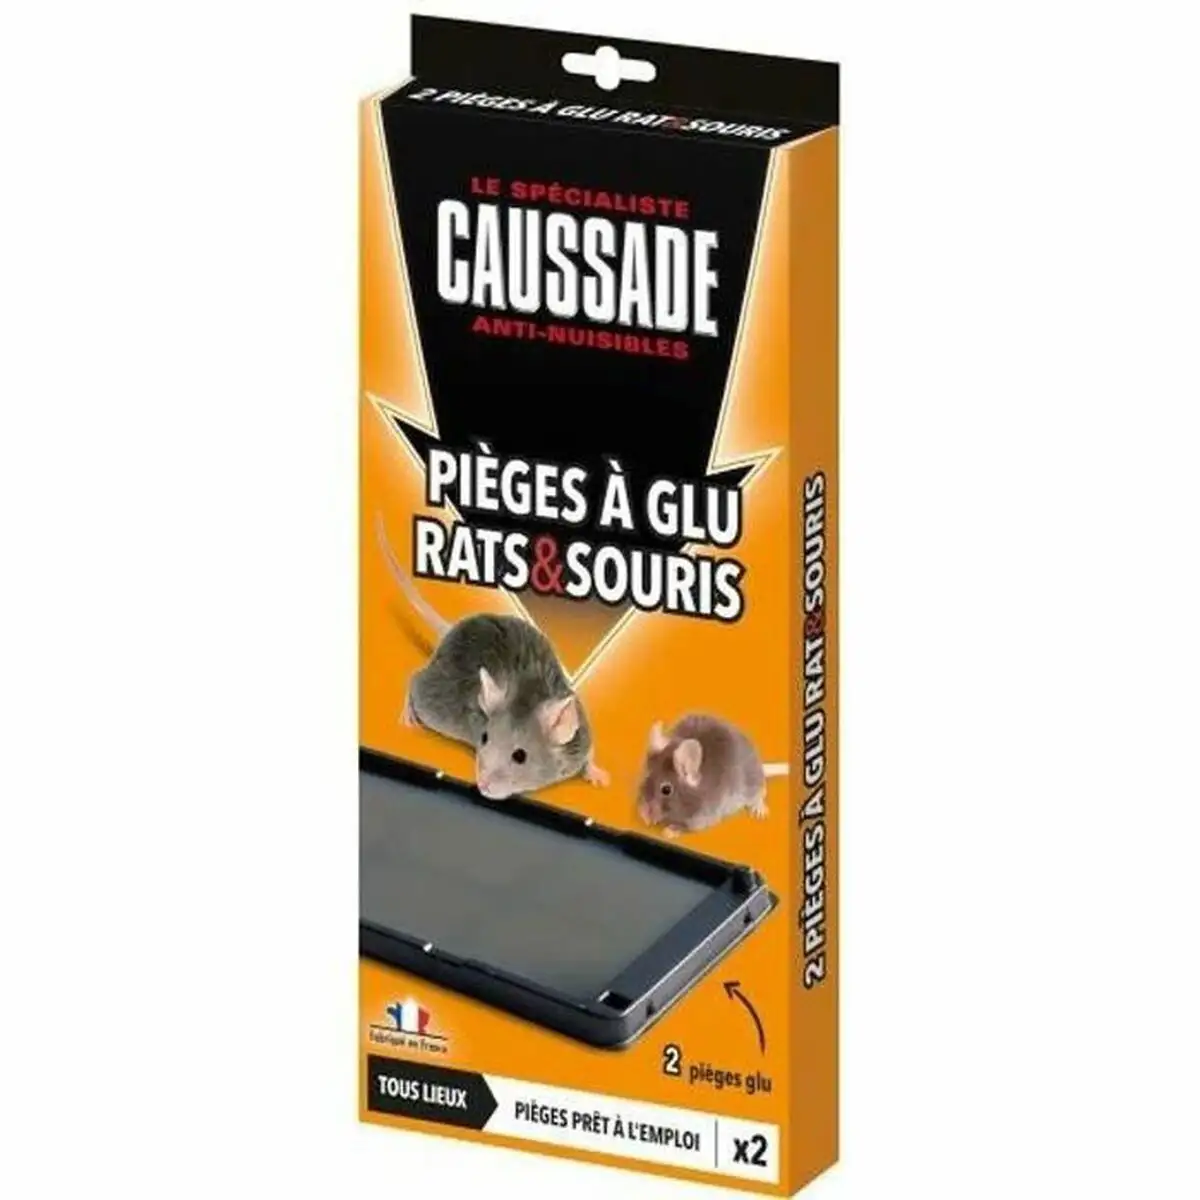 Piège à glue rat et souris Caussade (x 2)